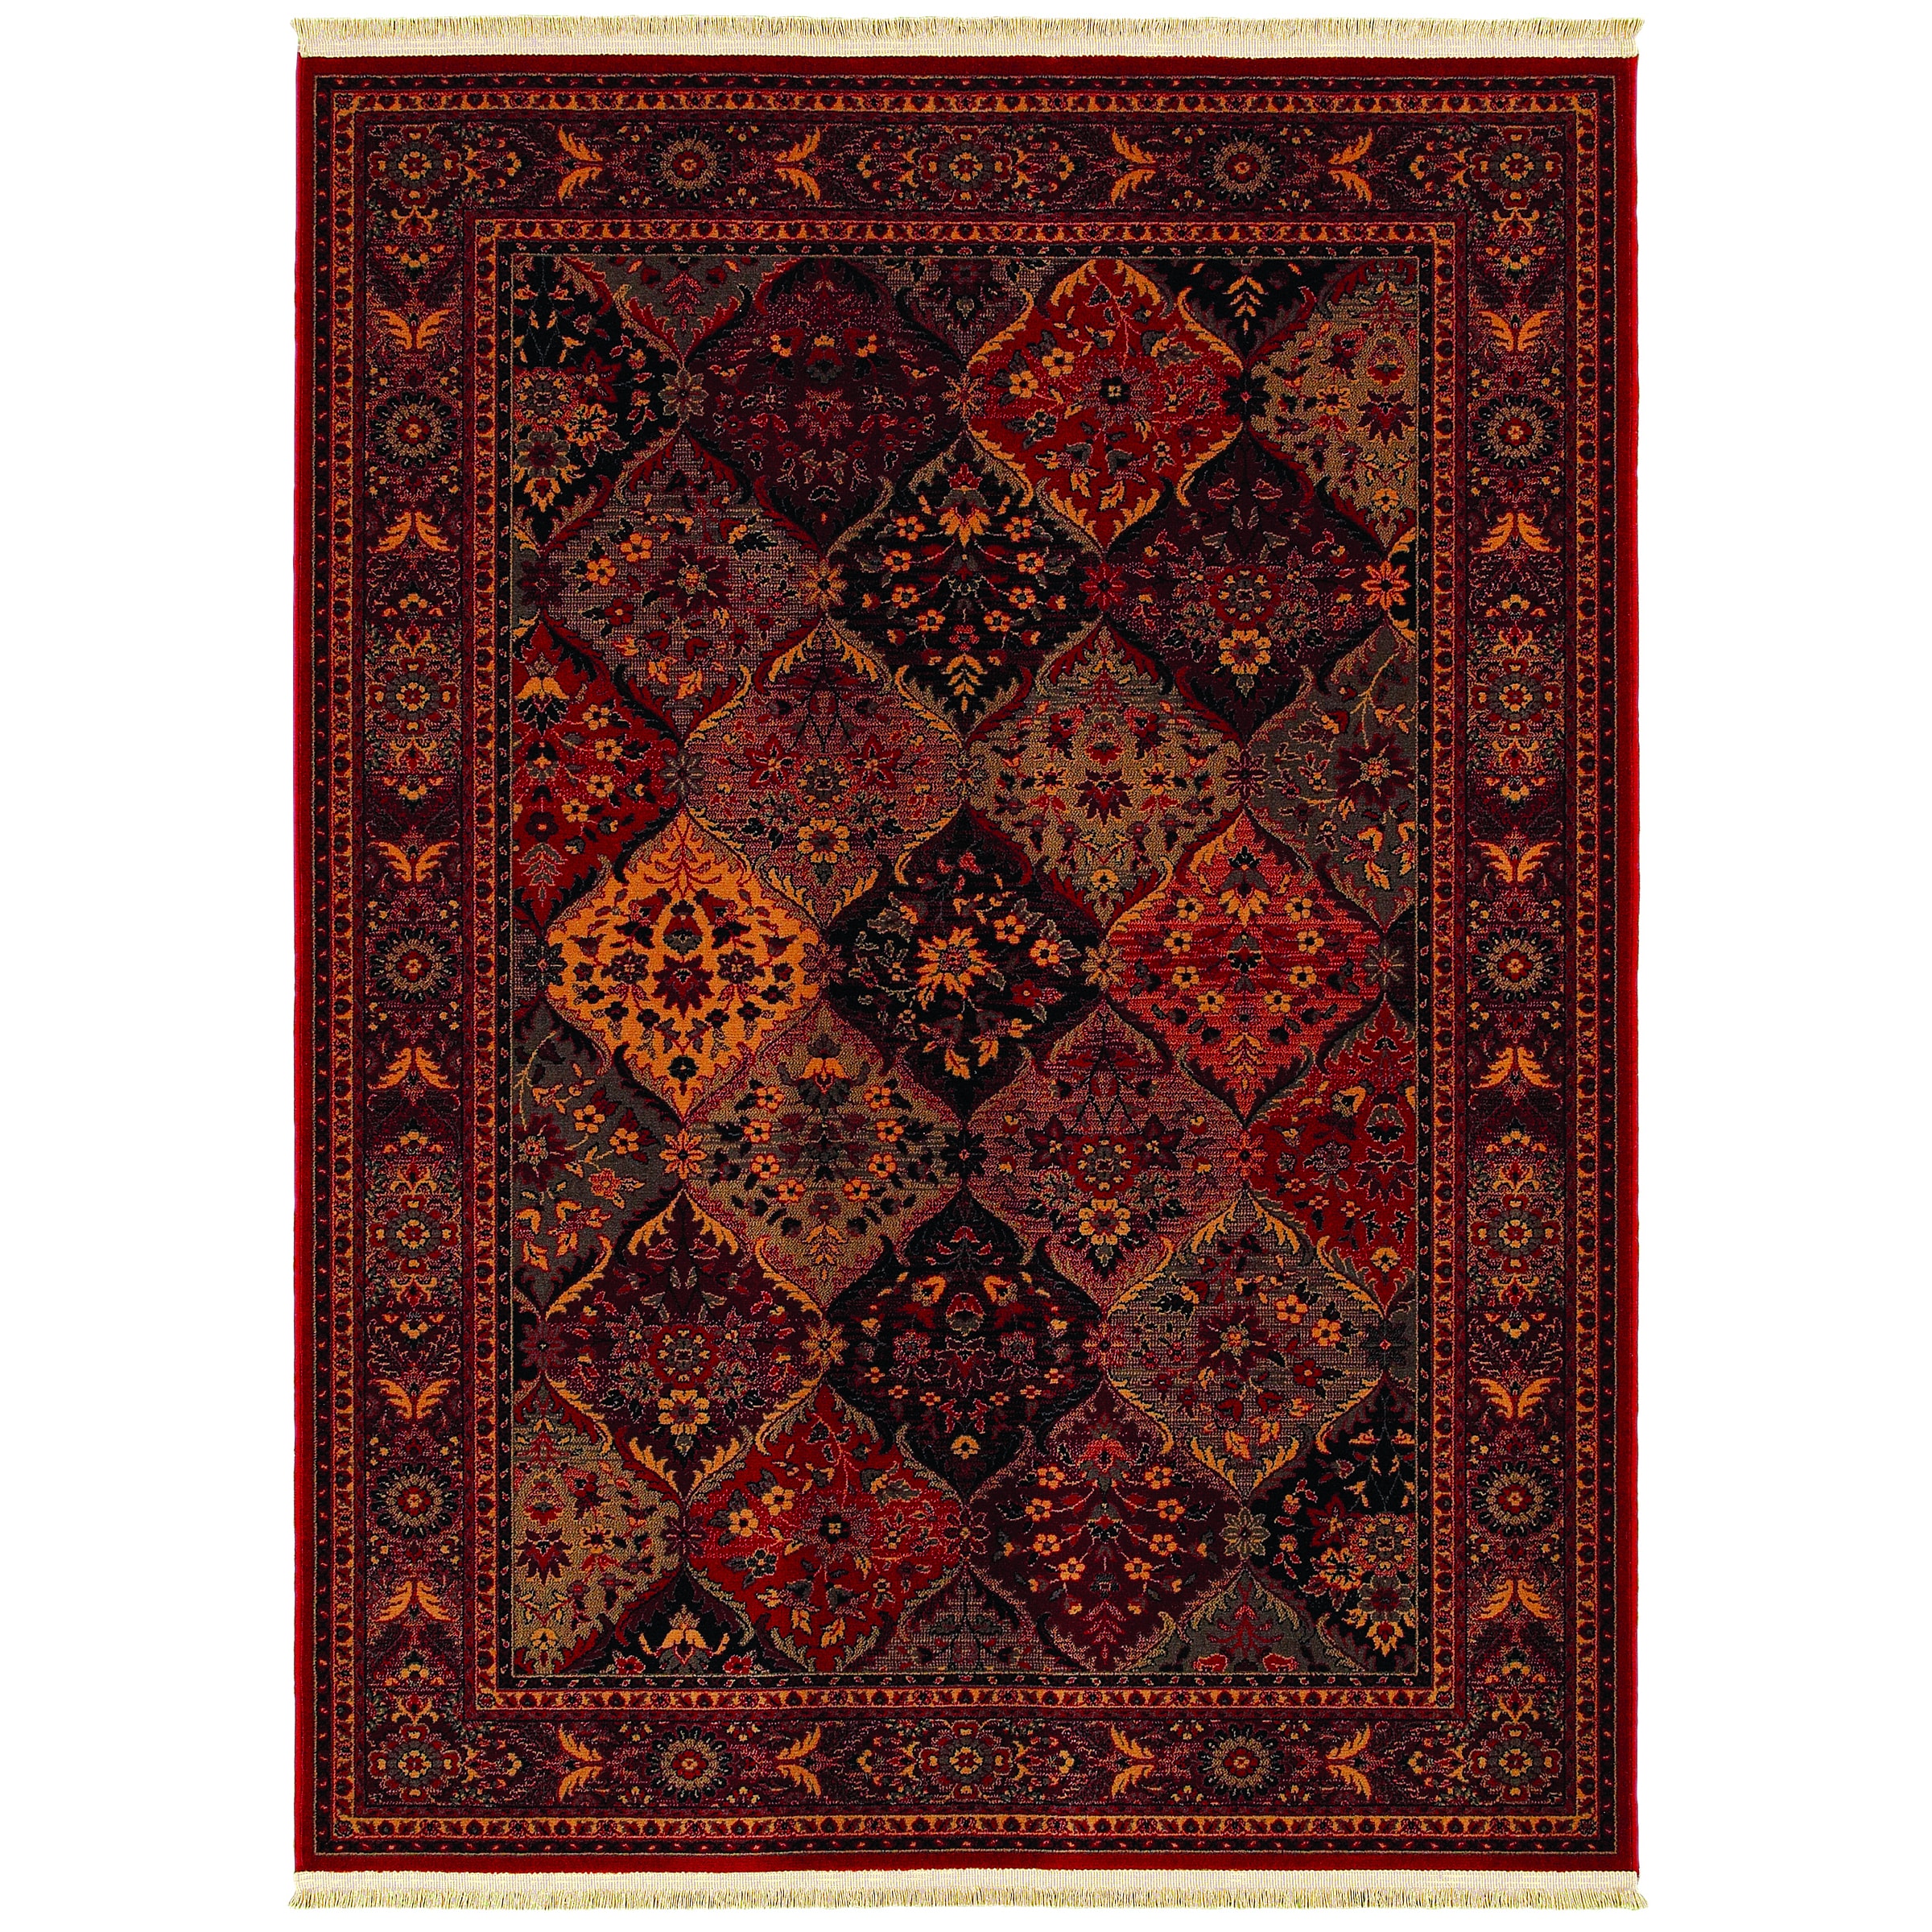 Kashimar Ardibel Panel Antique Red/ Multi Wool Rug (46 X 69)